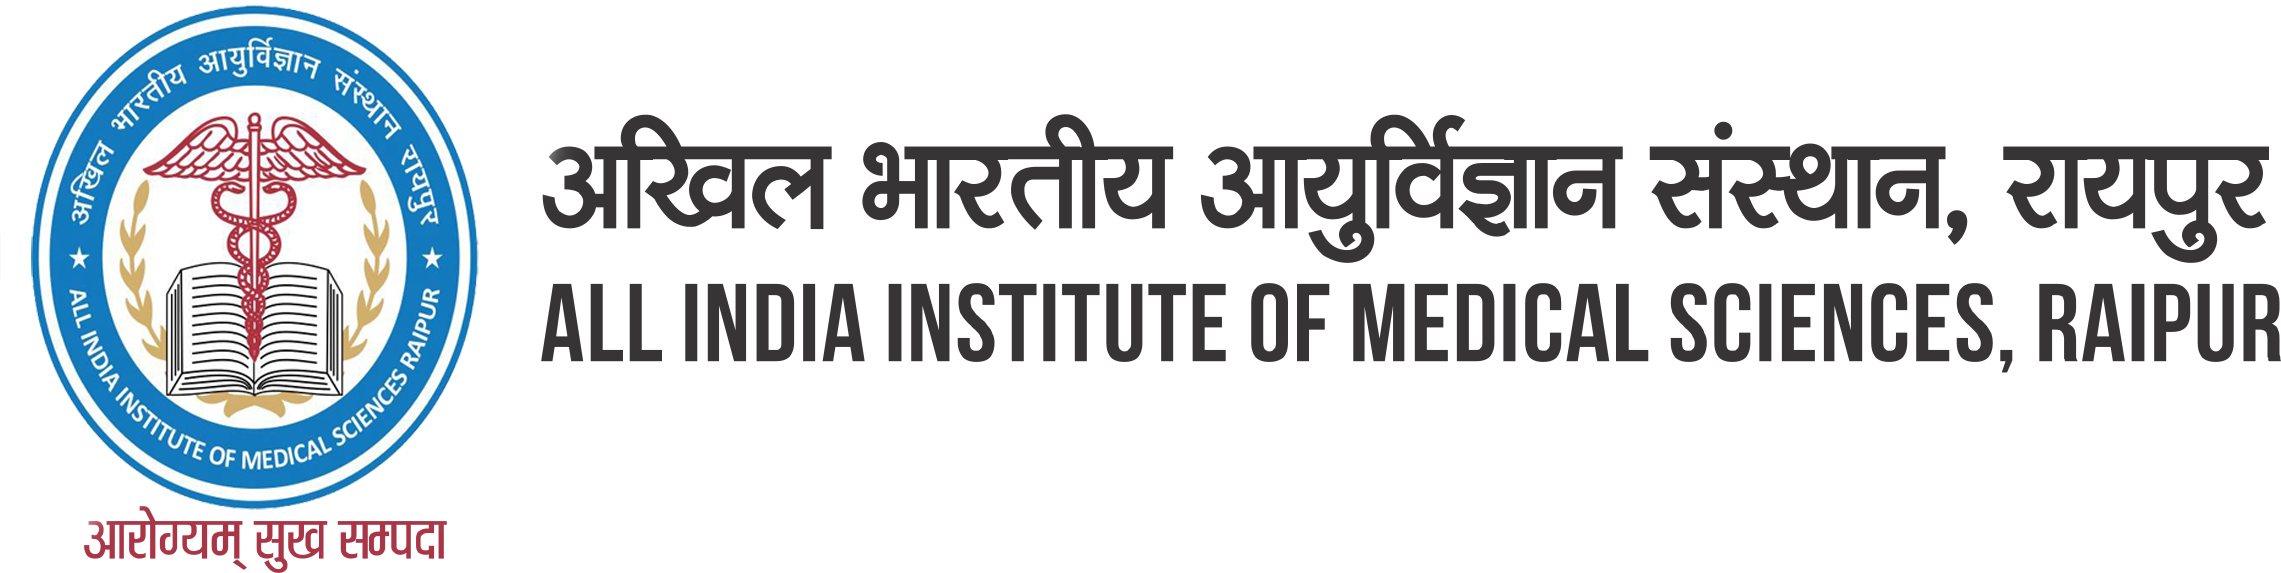 All India Institute of Medical Sciences - AIIMS Raipur